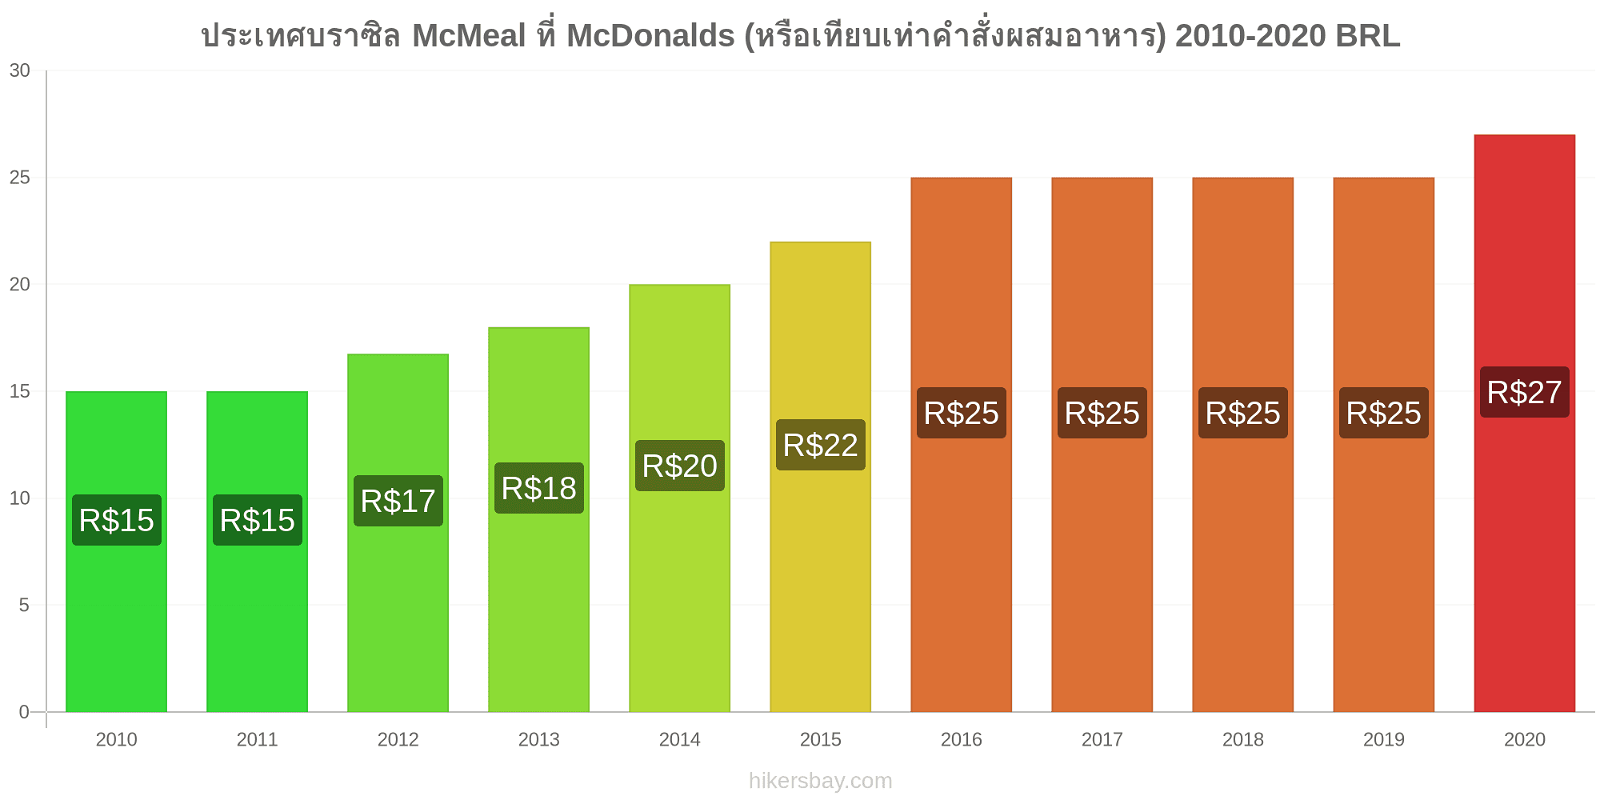 ประเทศบราซิล การเปลี่ยนแปลงราคา McMeal ที่ McDonalds (หรือเทียบเท่าคำสั่งผสมอาหาร) hikersbay.com